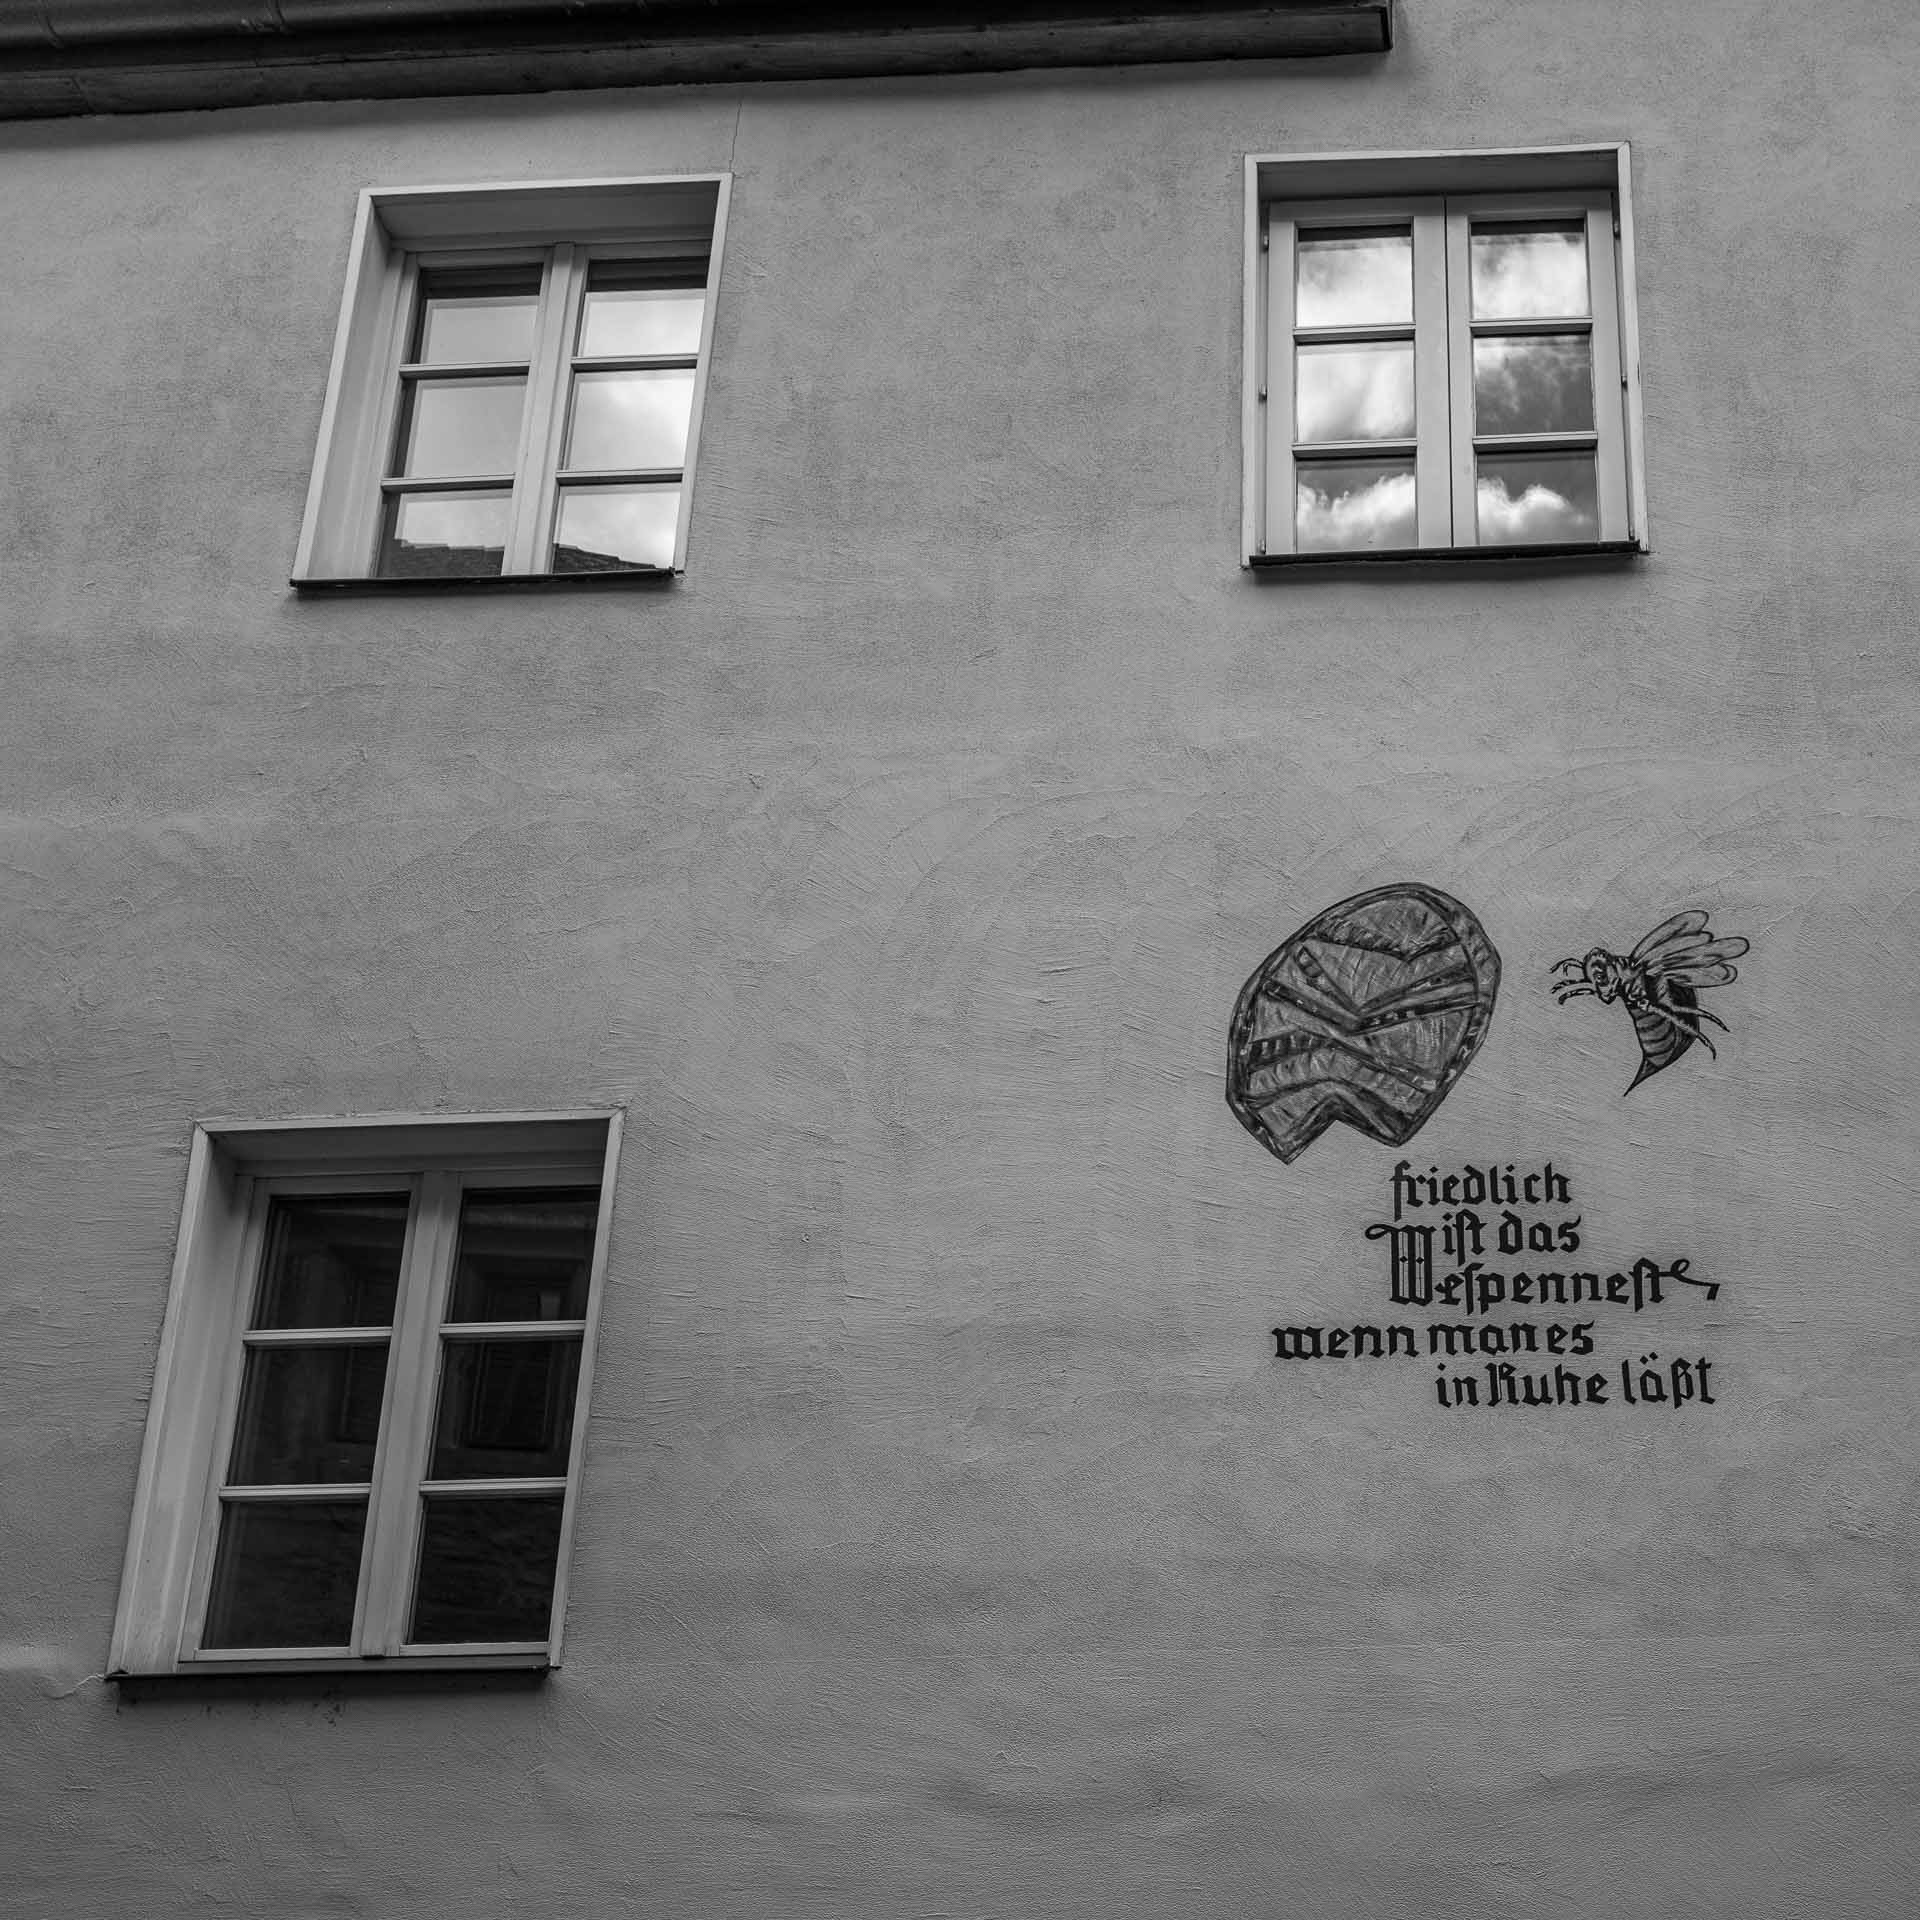 Im Wespennest Nürnberg. Die Inschrift an der Hauswand benennt es deutlich. Friedlich ist das Wespennest, wenn man es in Ruhe läßt.